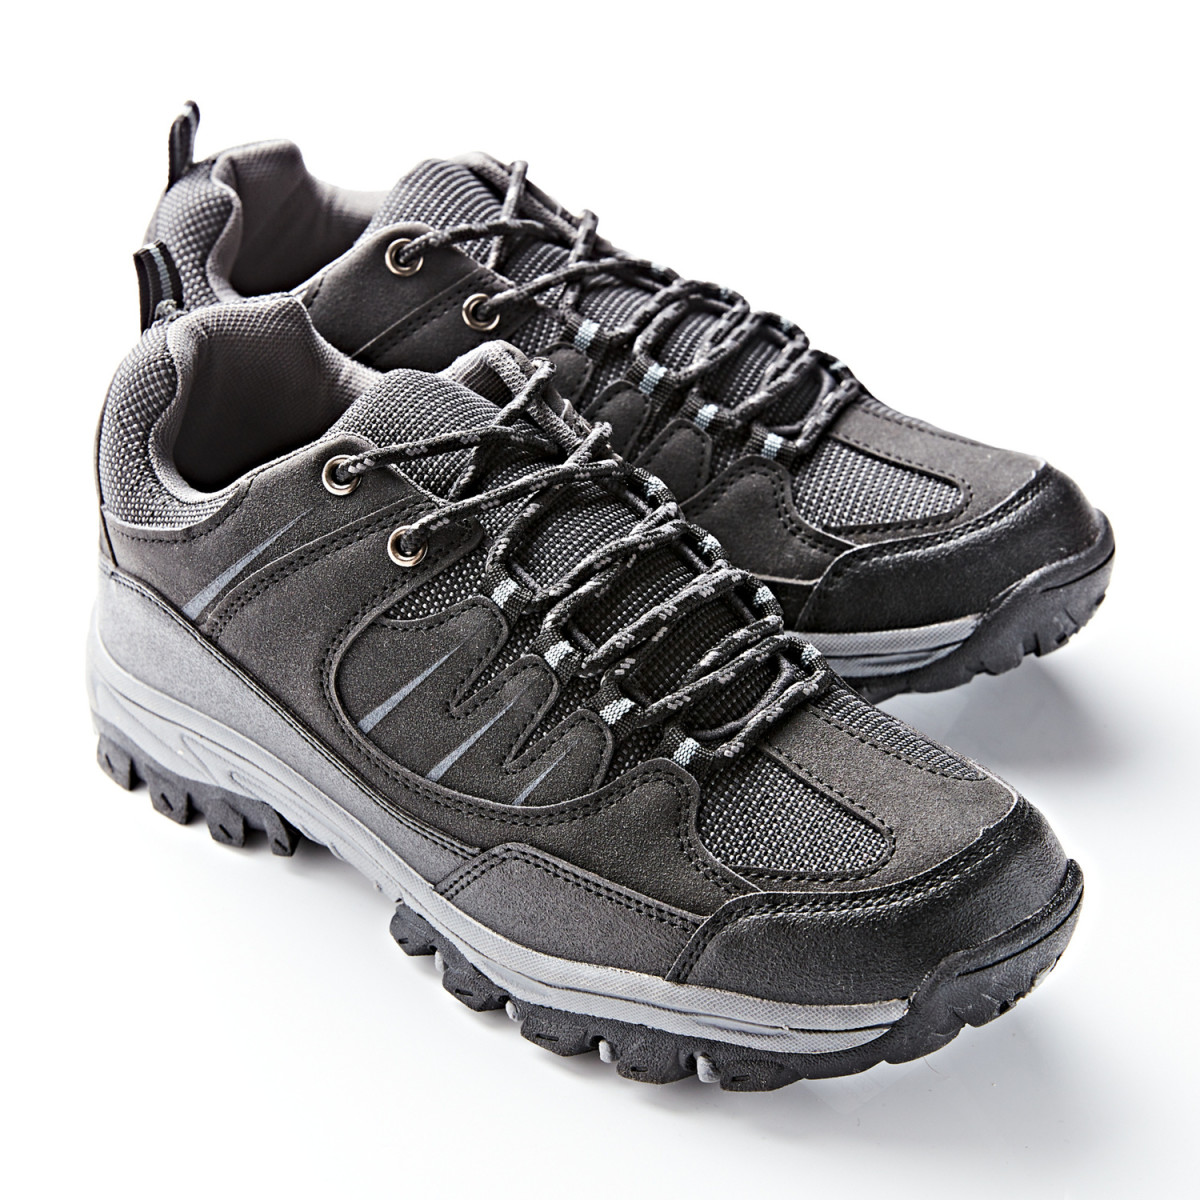 Magnet 3Pagen Trekingová obuv černá-šedá 42